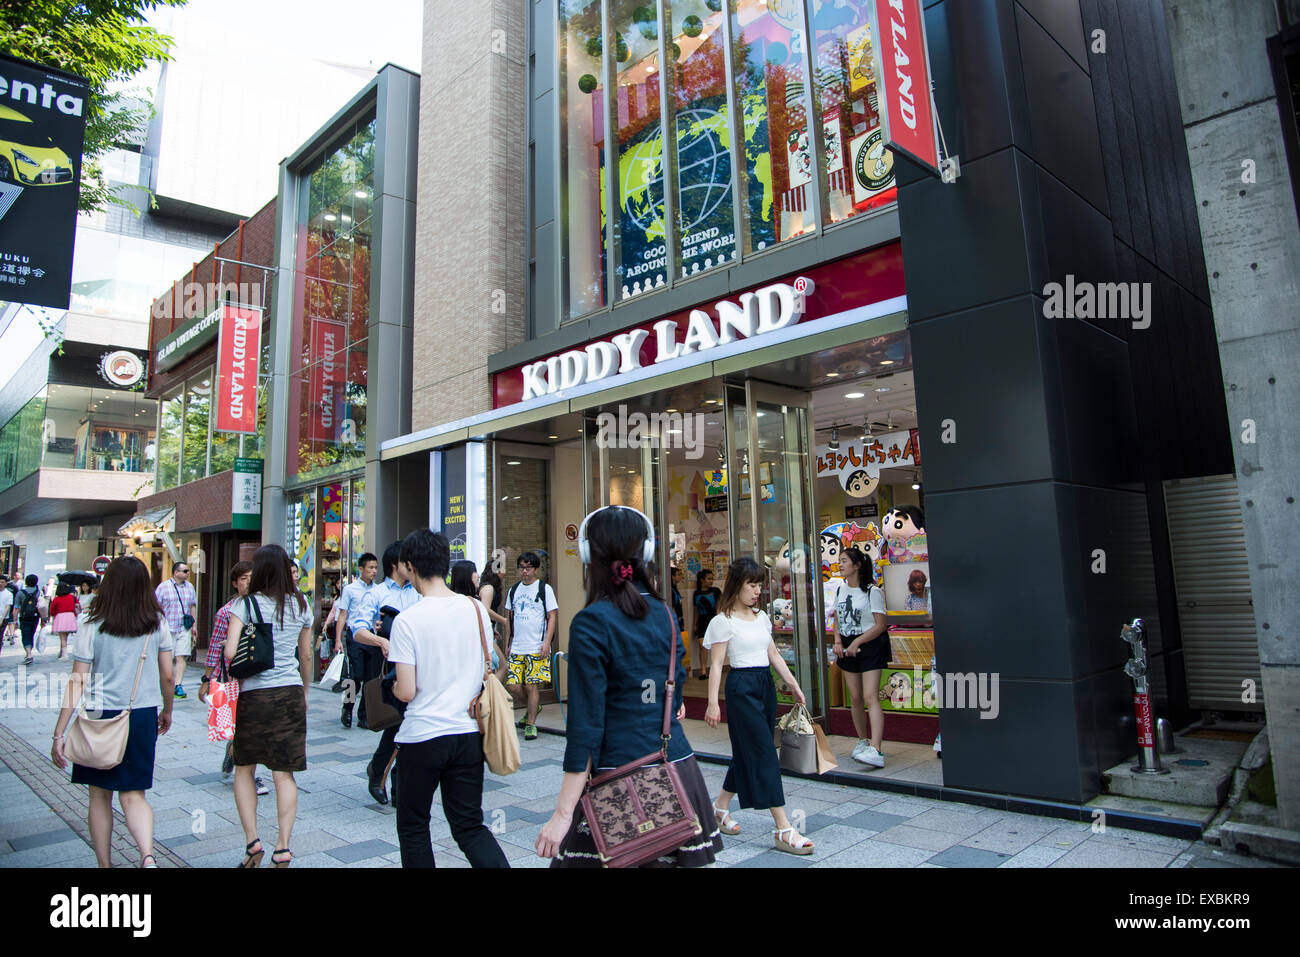 Kiddy land,Omotesando,Shibuya-Ku,Tokyo,Japan Stock Photo